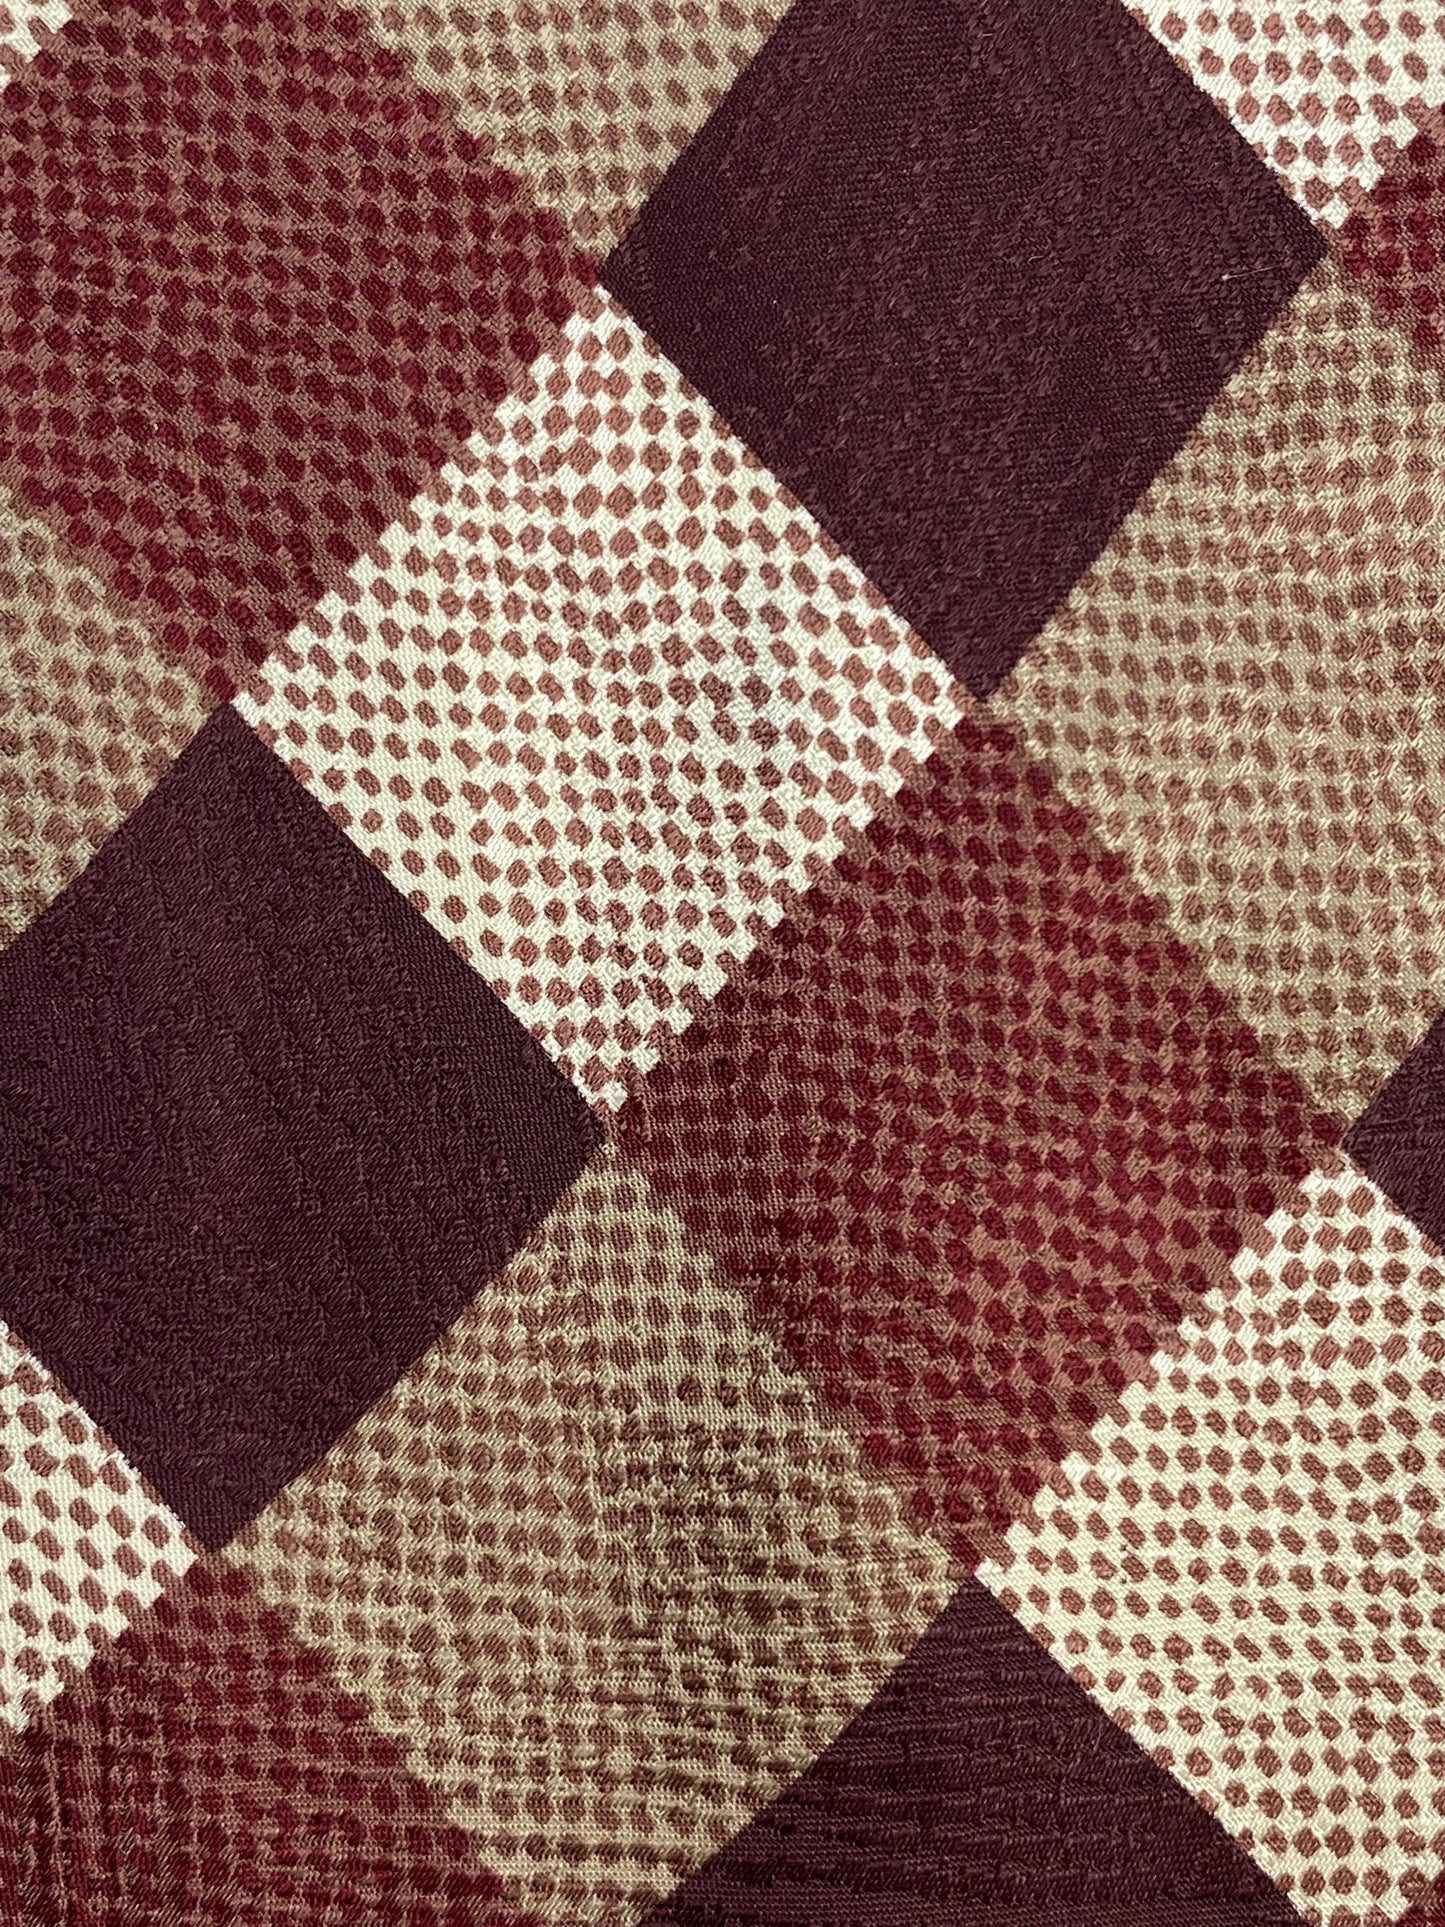 Close-up of: 90s Deadstock Silk Necktie, Men's Vintage Brown Checkered Pattern Tie, NOS